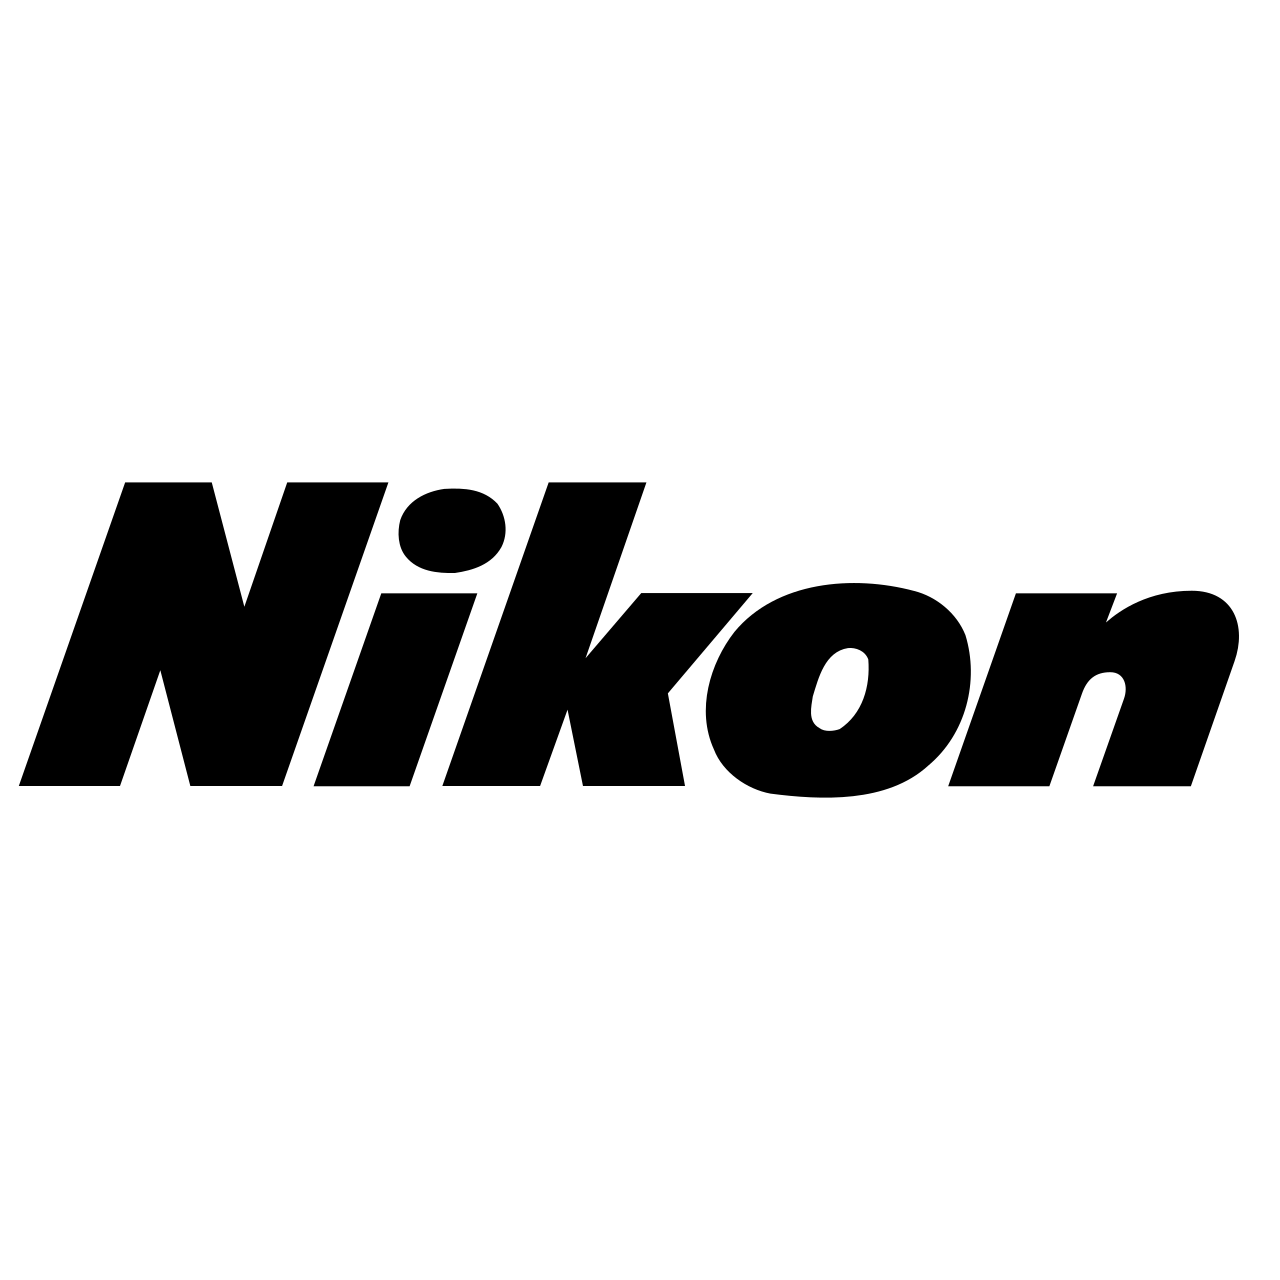 Nikon AF-S NIKKOR 16-35mm f/4G ED VR